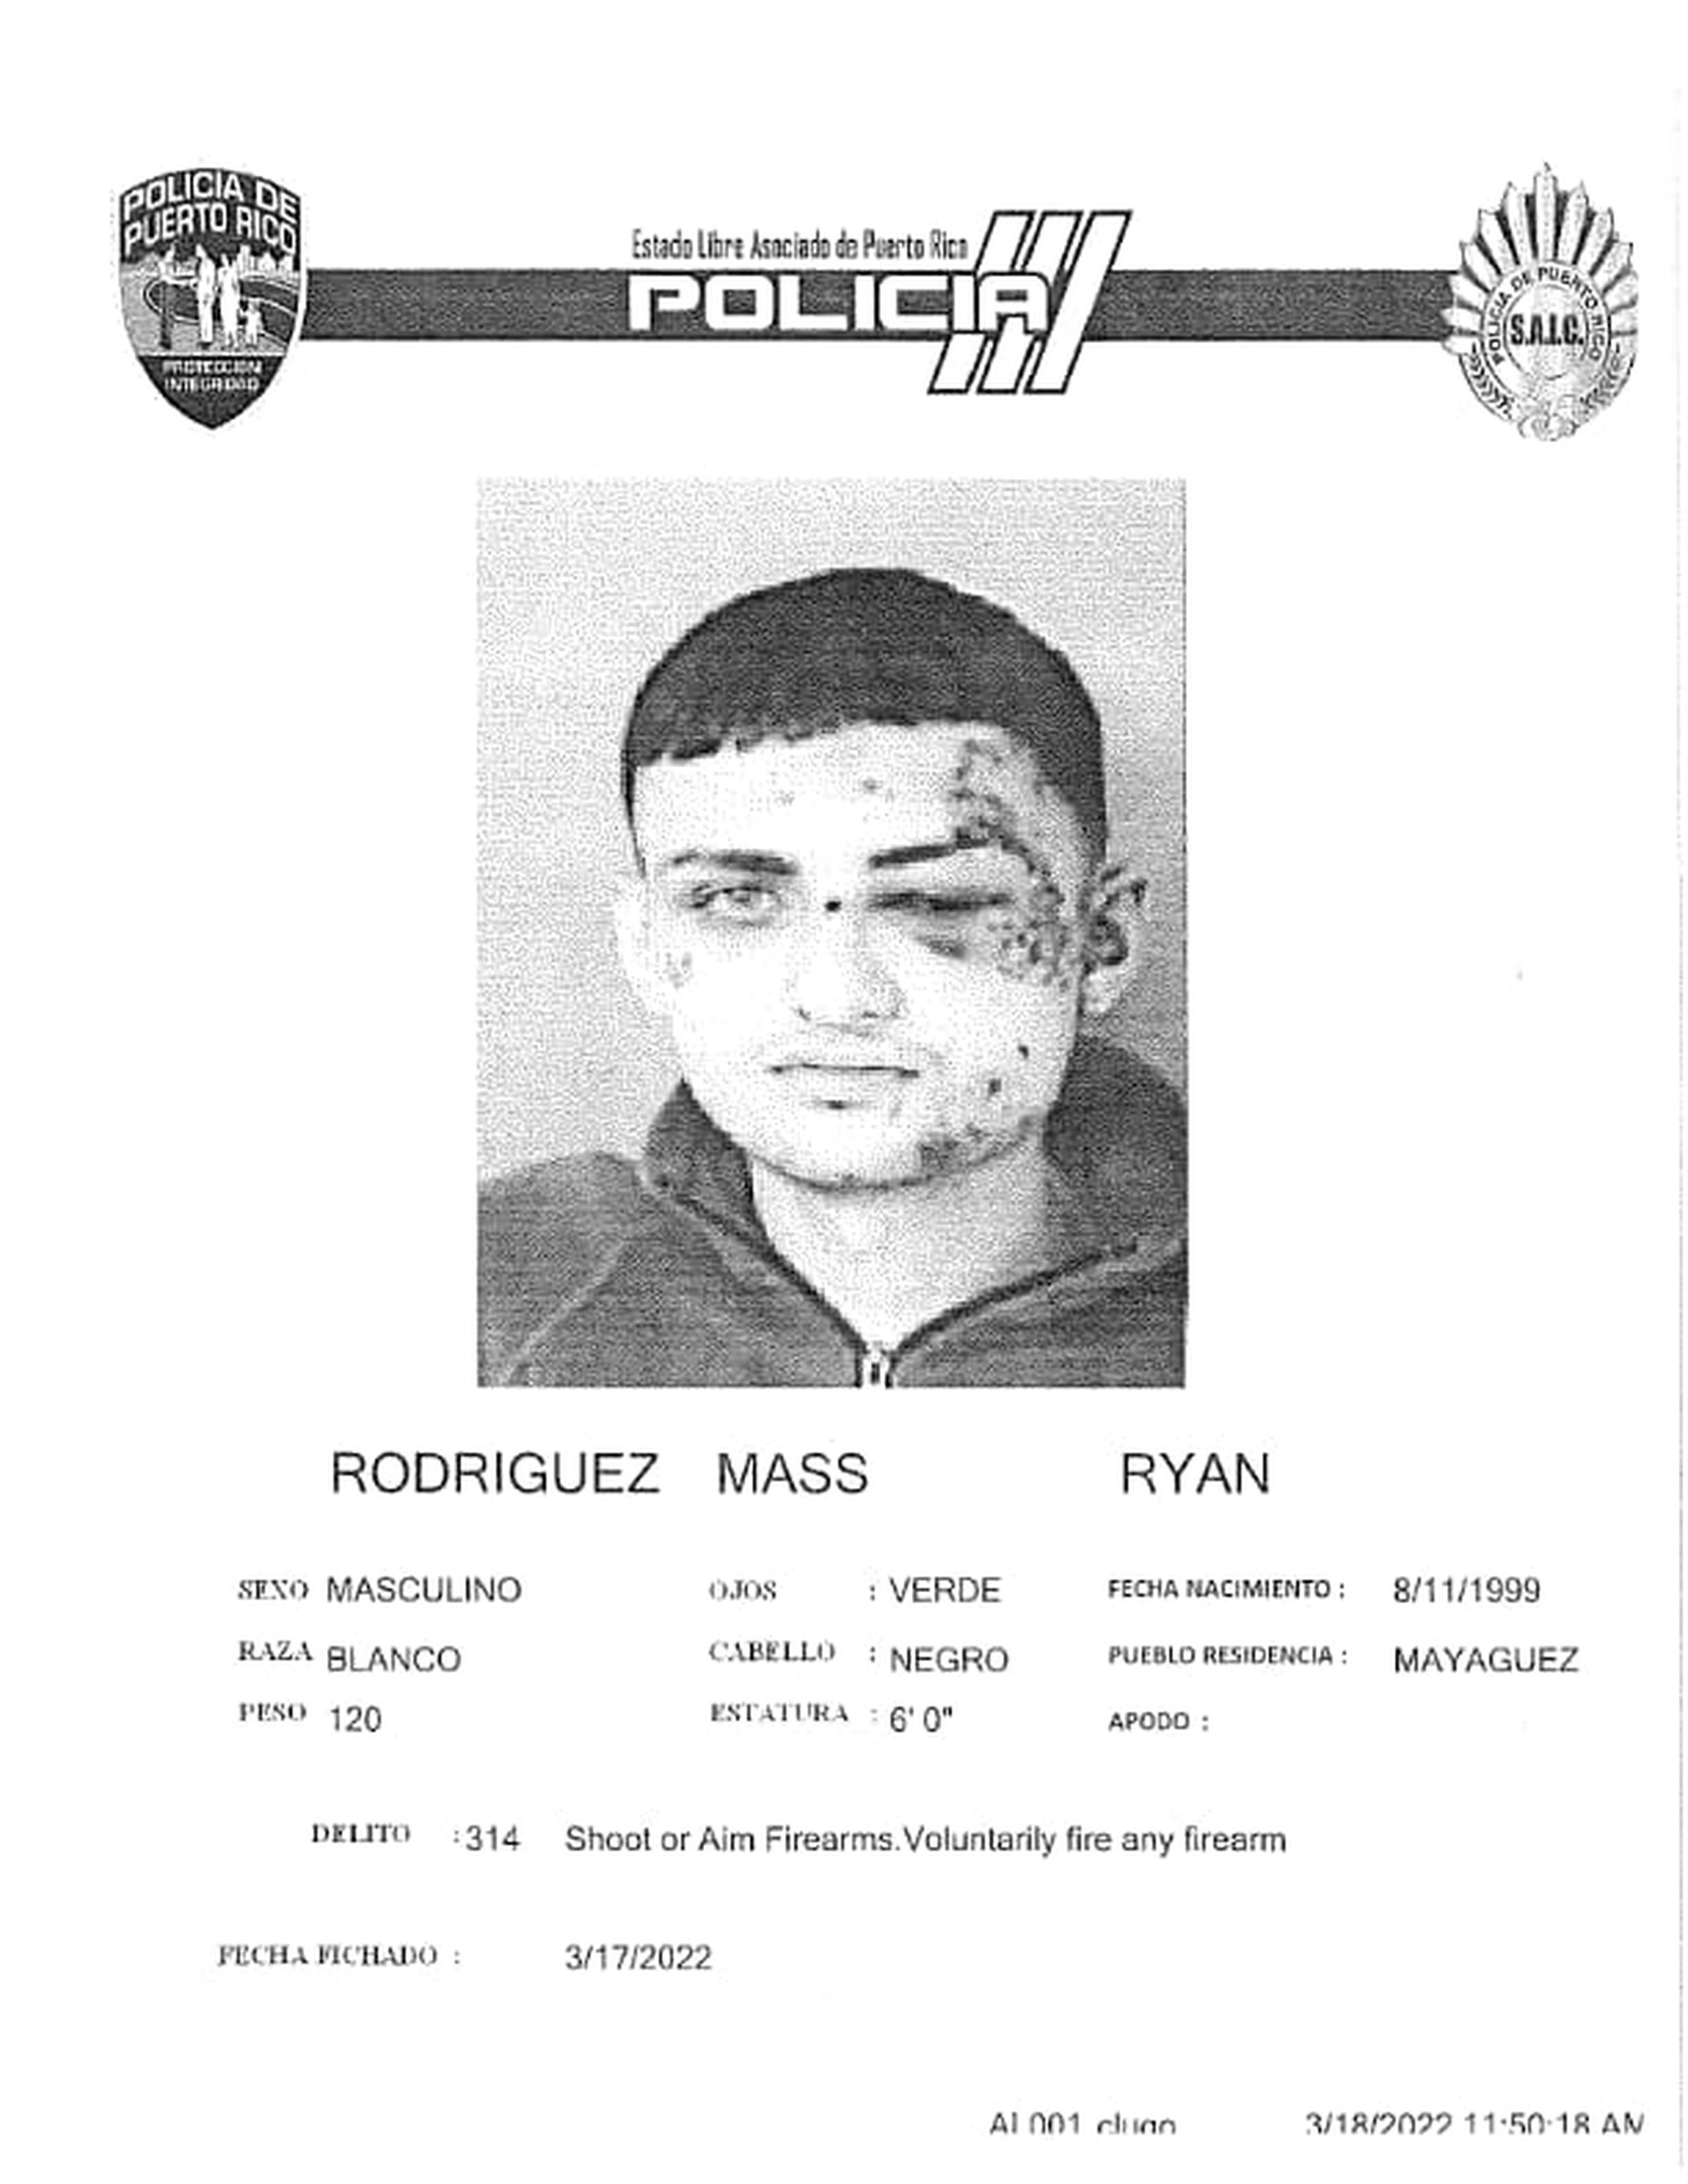 Ryan Rodríguez Mass de 22 años.